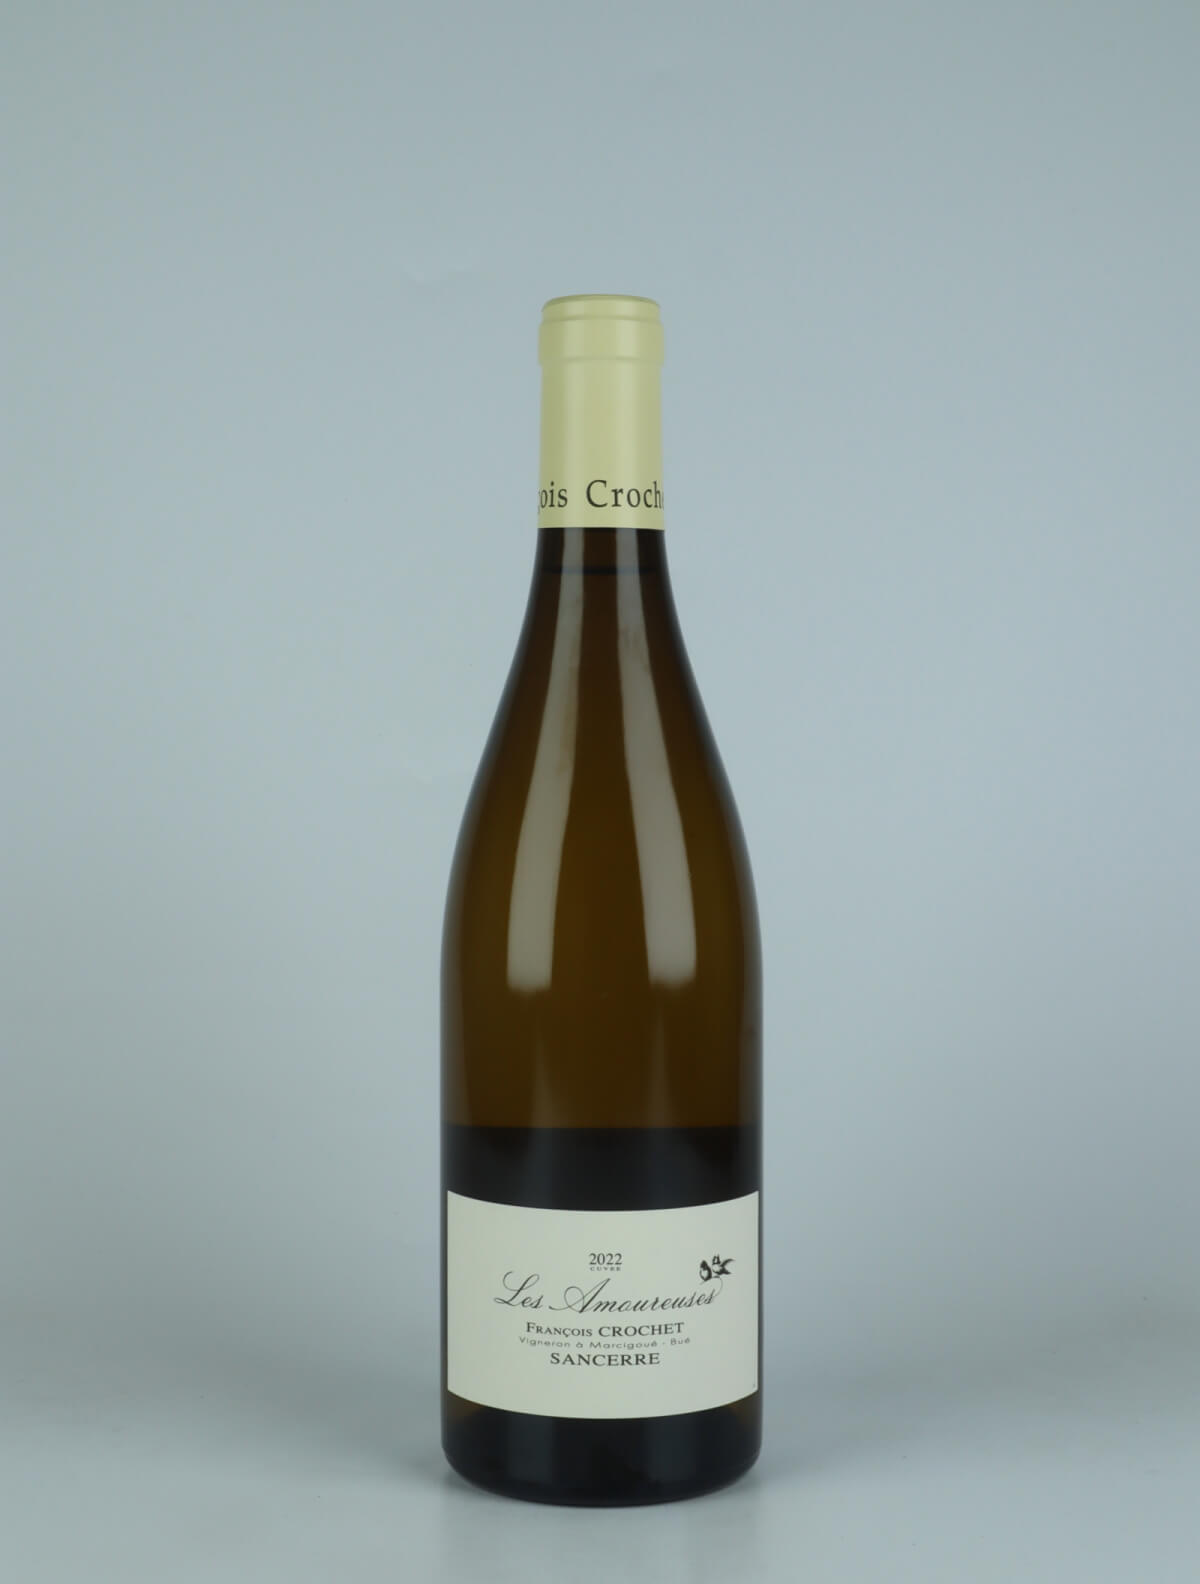 En flaske 2022 Sancerre Blanc - Les Amoureuses Hvidvin fra François Crochet, Loire i Frankrig